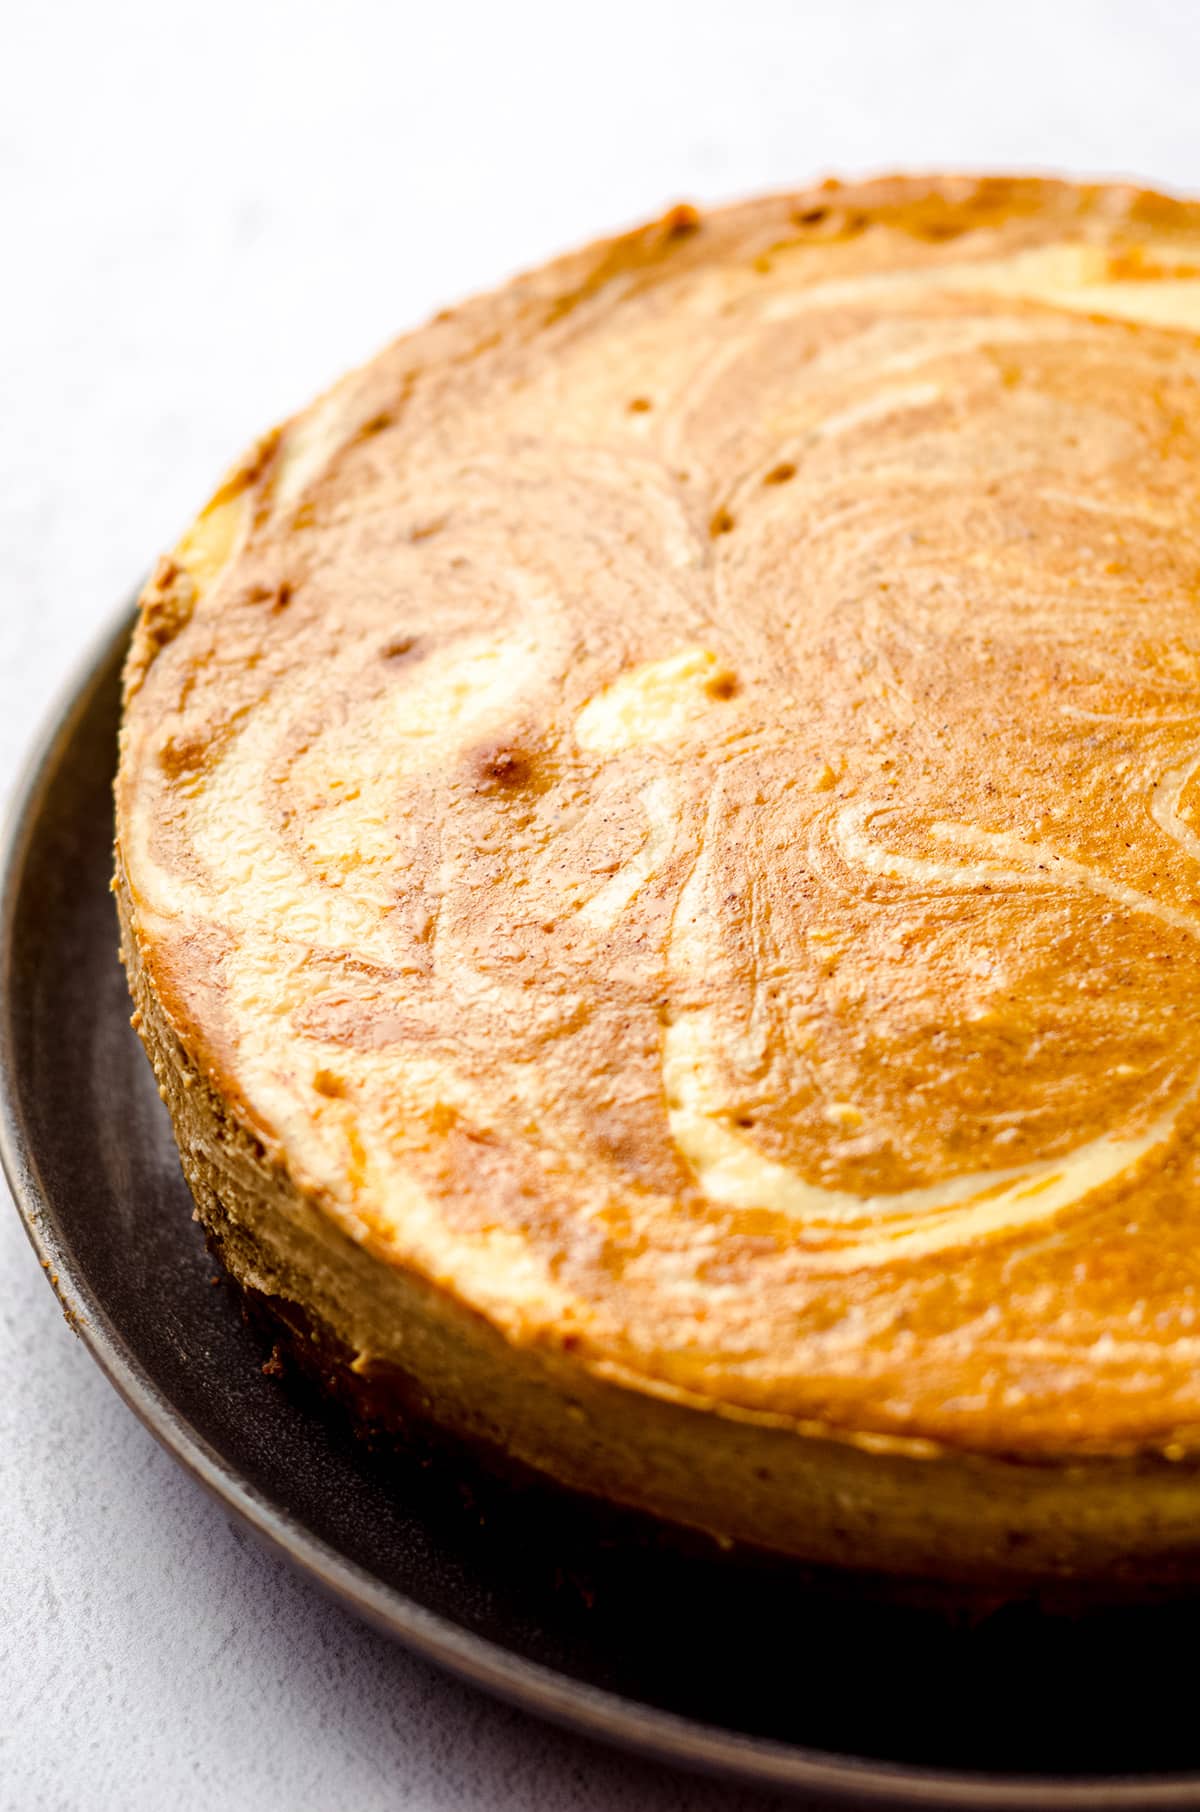 A plain pumpkin swirl cheesecake.